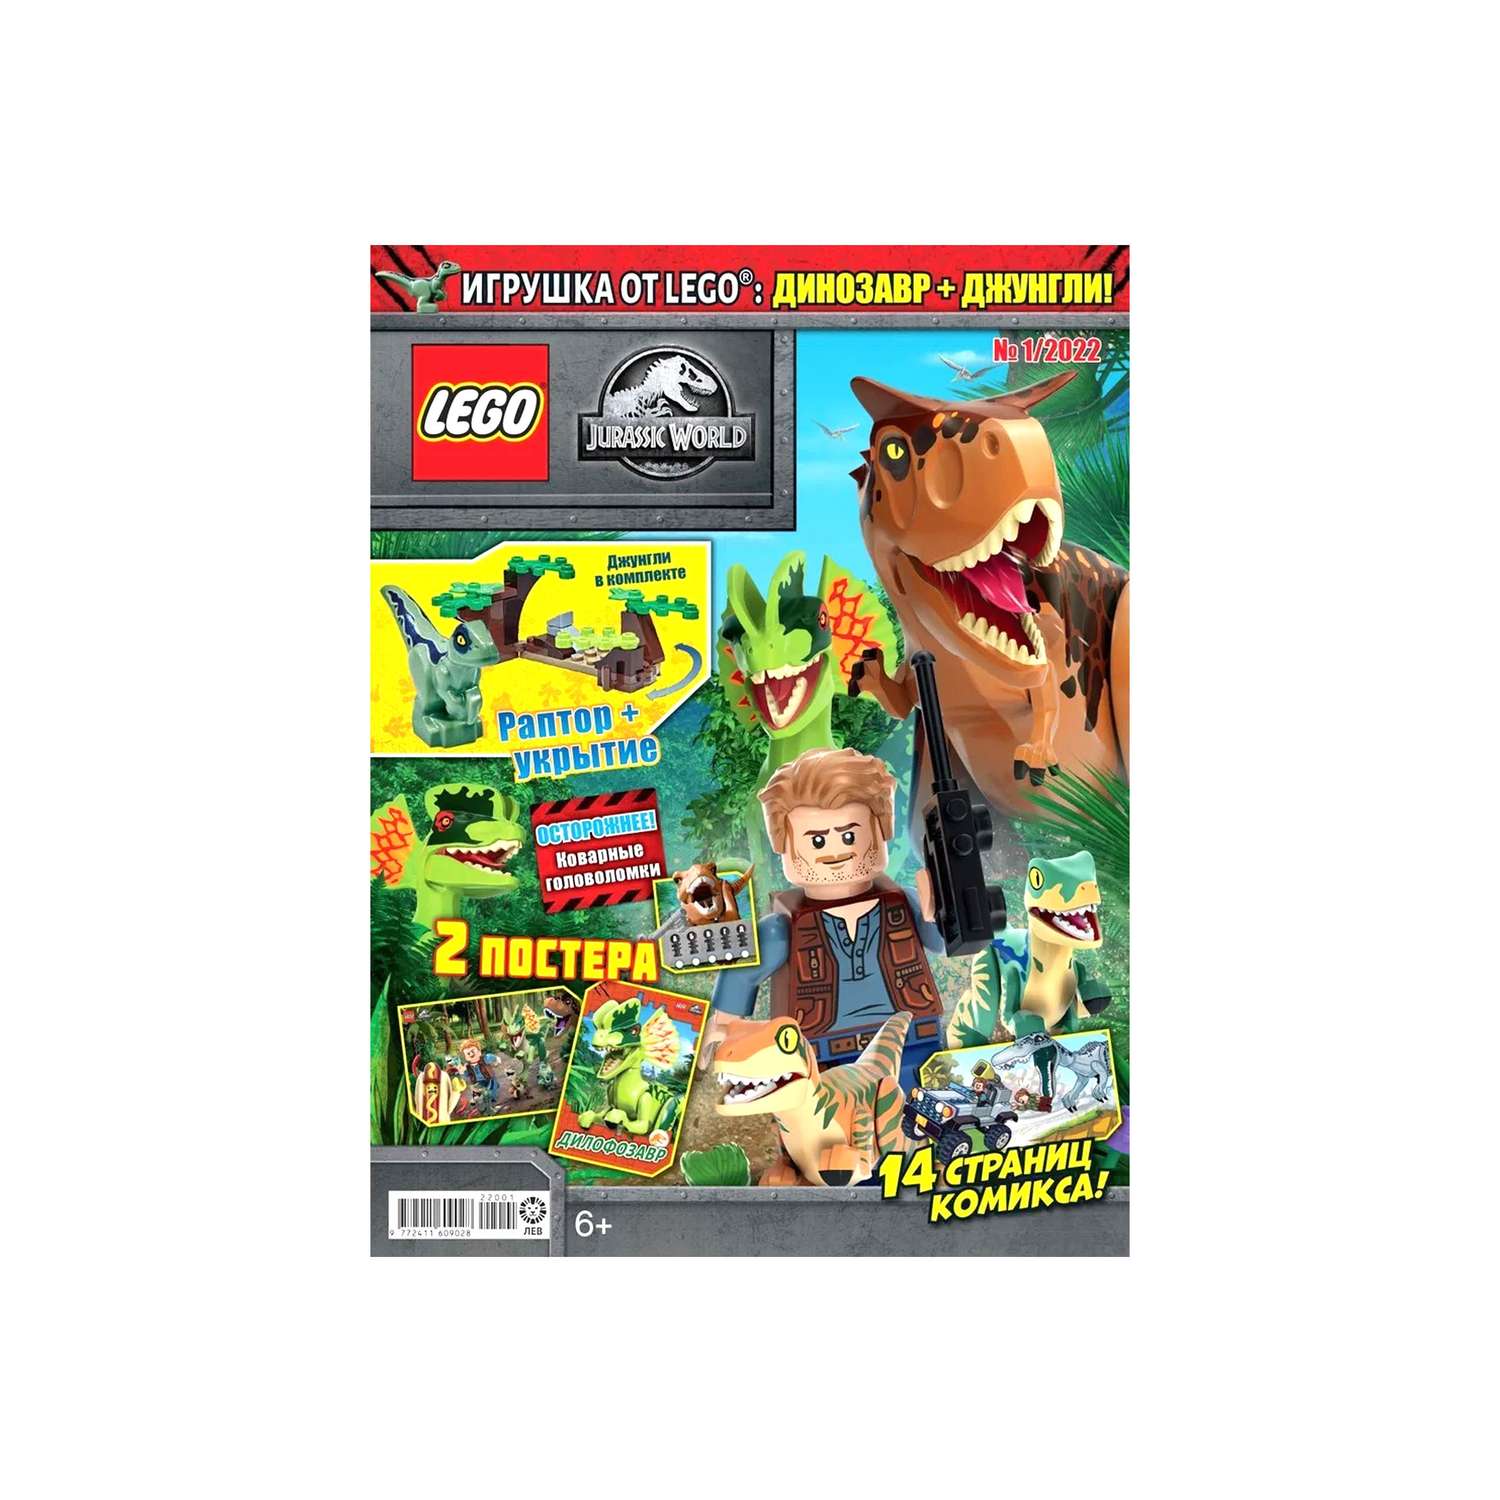 Журнал LEGO Jurassic World с вложением (конструктор) (1/22) Лего Мир Юрского периода - фото 2